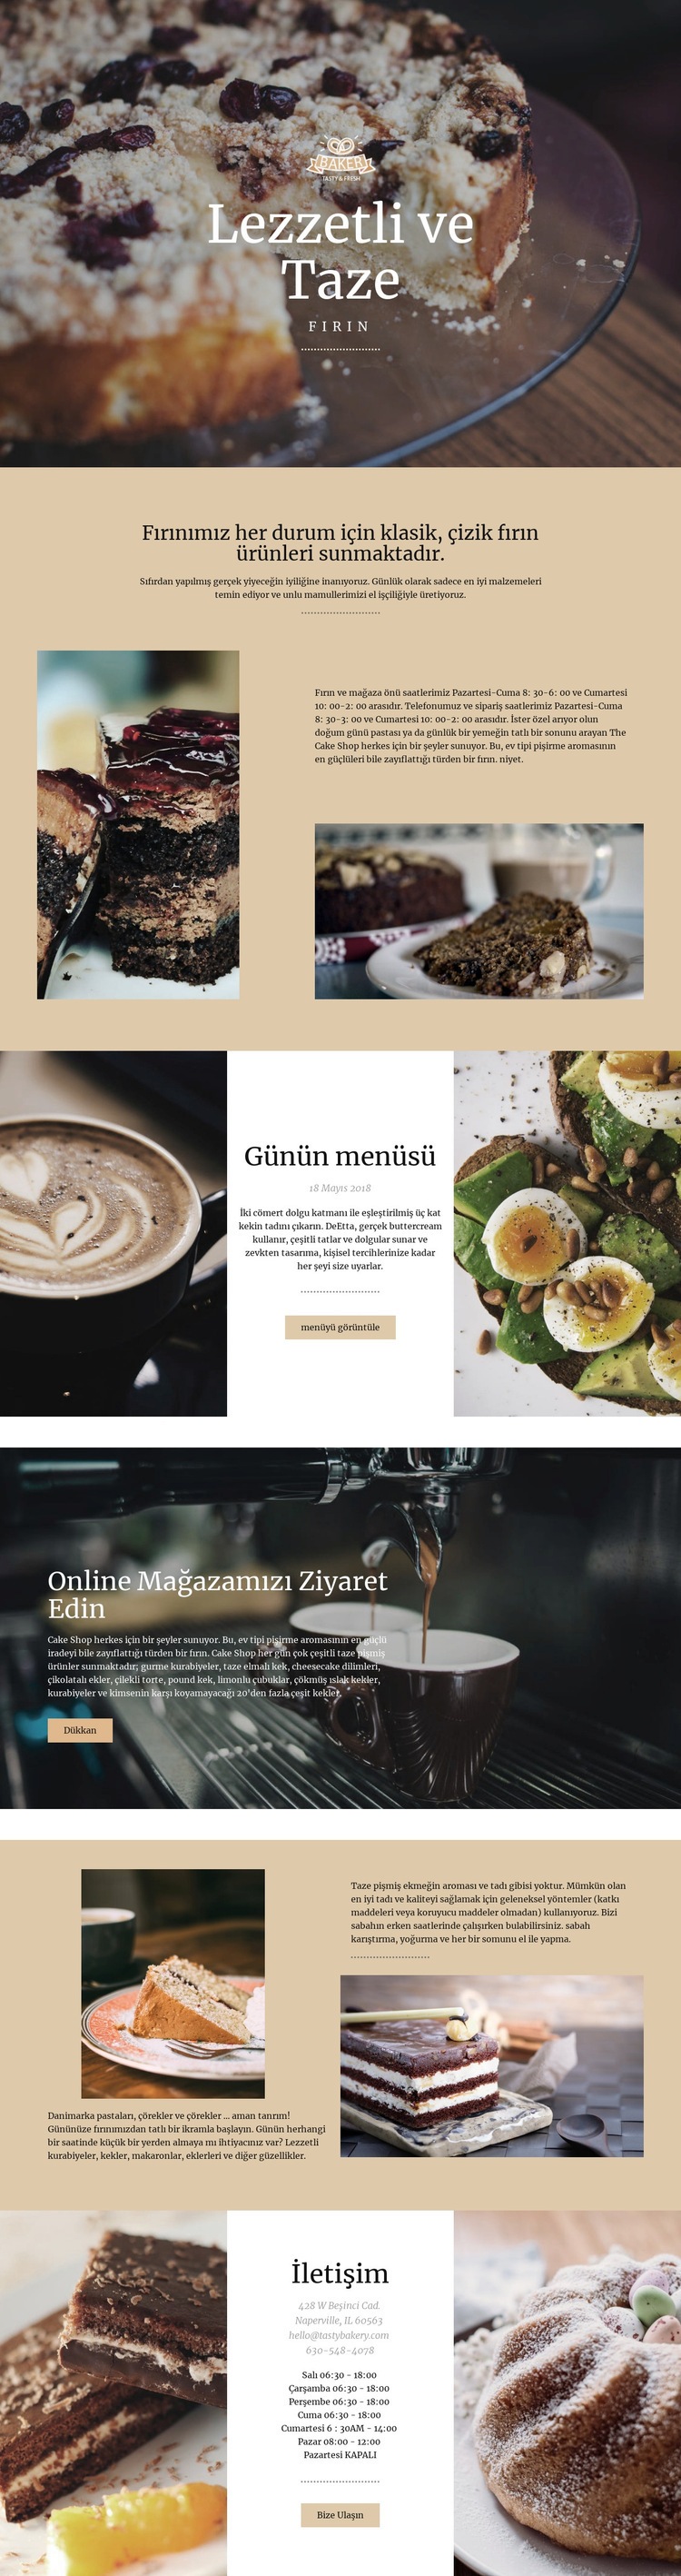 Lezzetli ve taze yemekler Web sitesi tasarımı